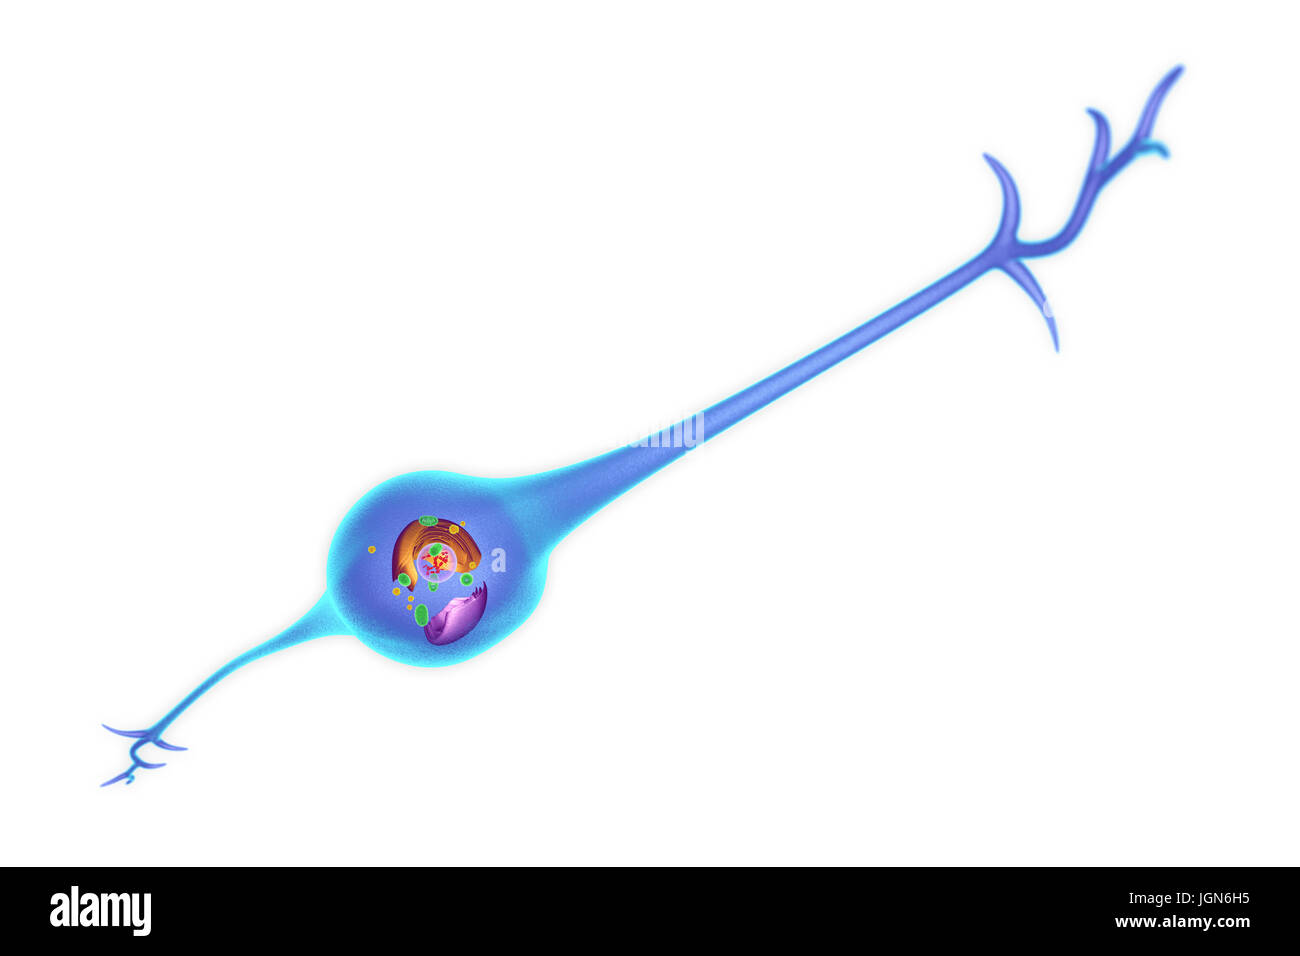 Una cellule gliali che mostra la sua struttura interna. Le cellule gliali forniscono il supporto per i neuroni (cellule nervose). Foto Stock